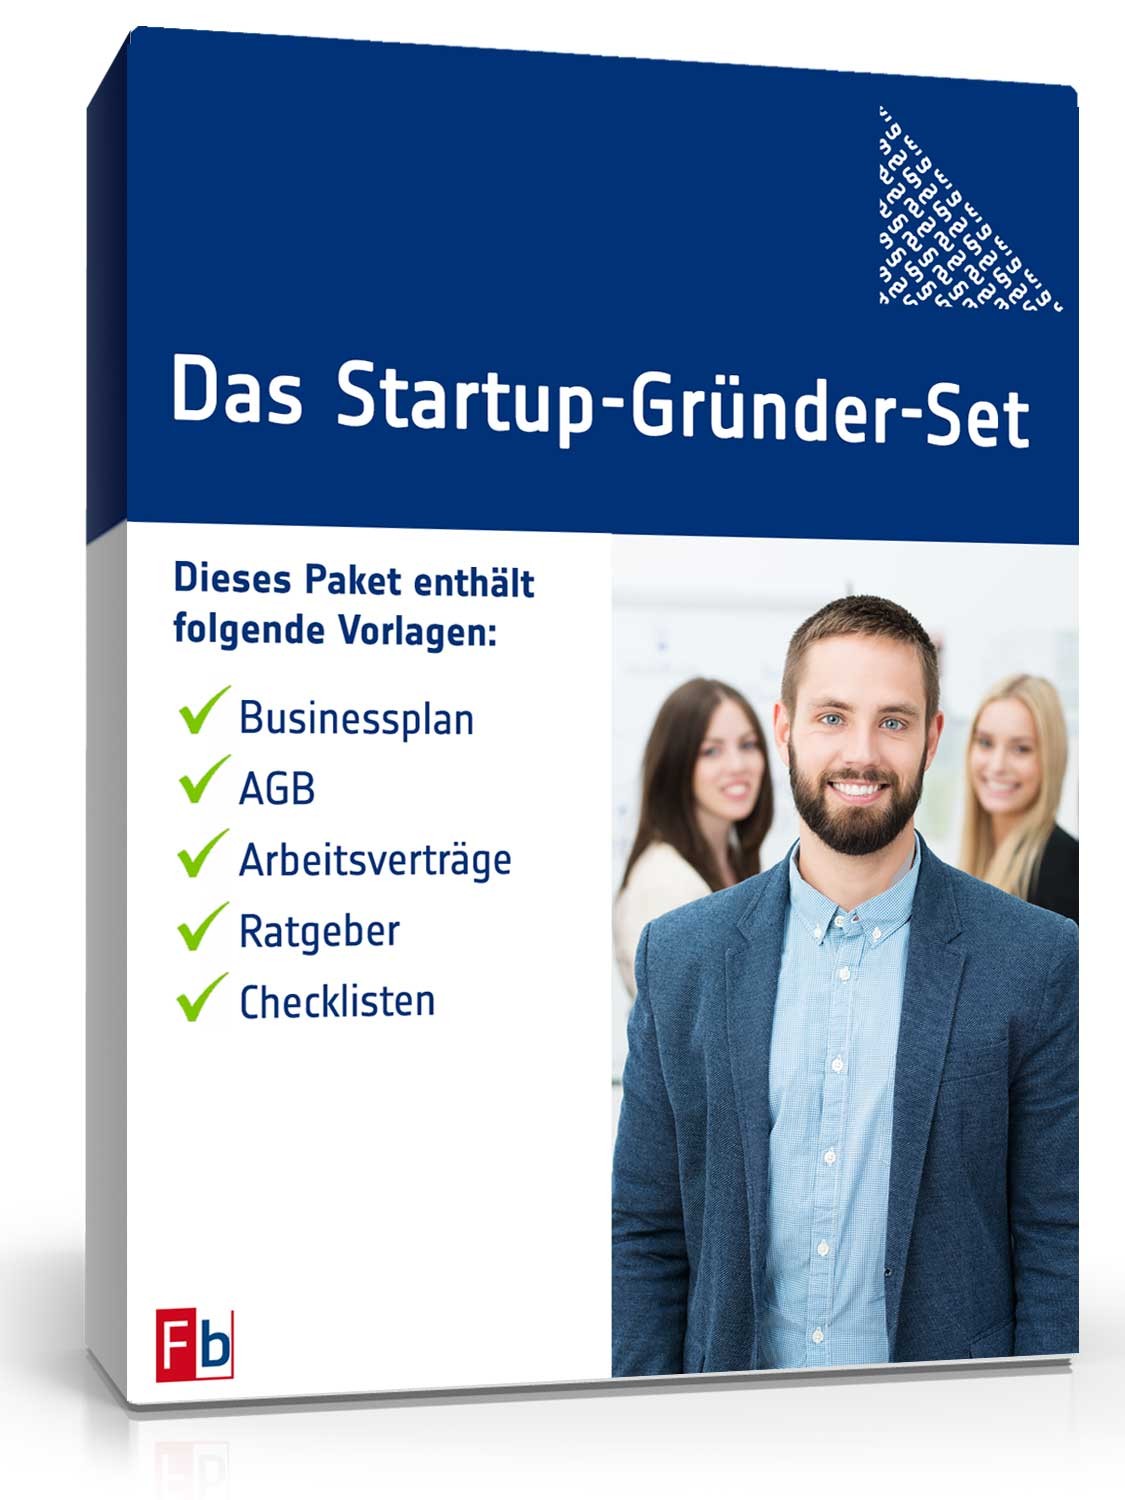 Hauptbild des Produkts: Das Startup-Gründer-Set 